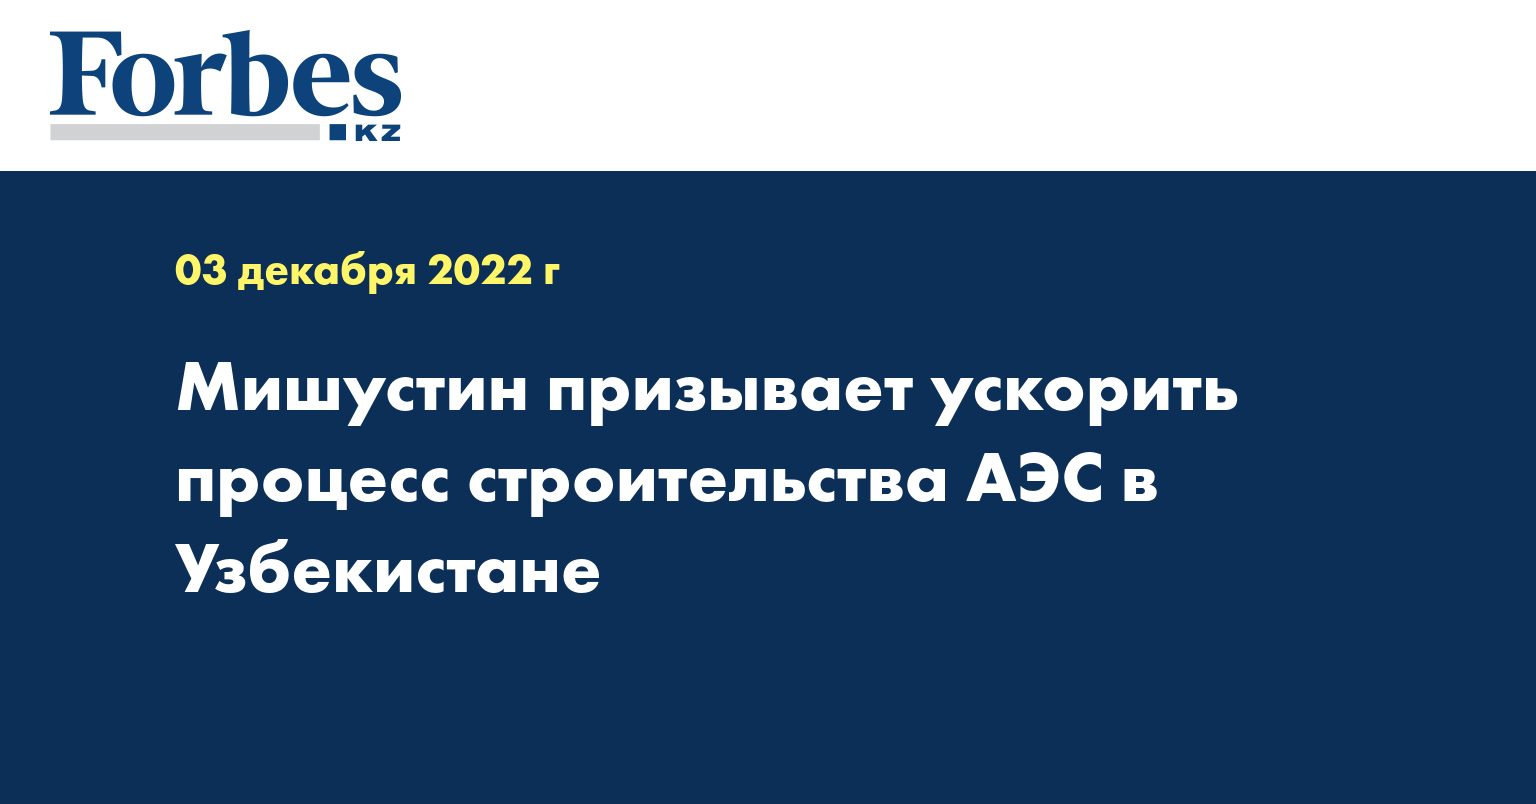 Мишустин призывает ускорить процесс строительства АЭС в Узбекистане 